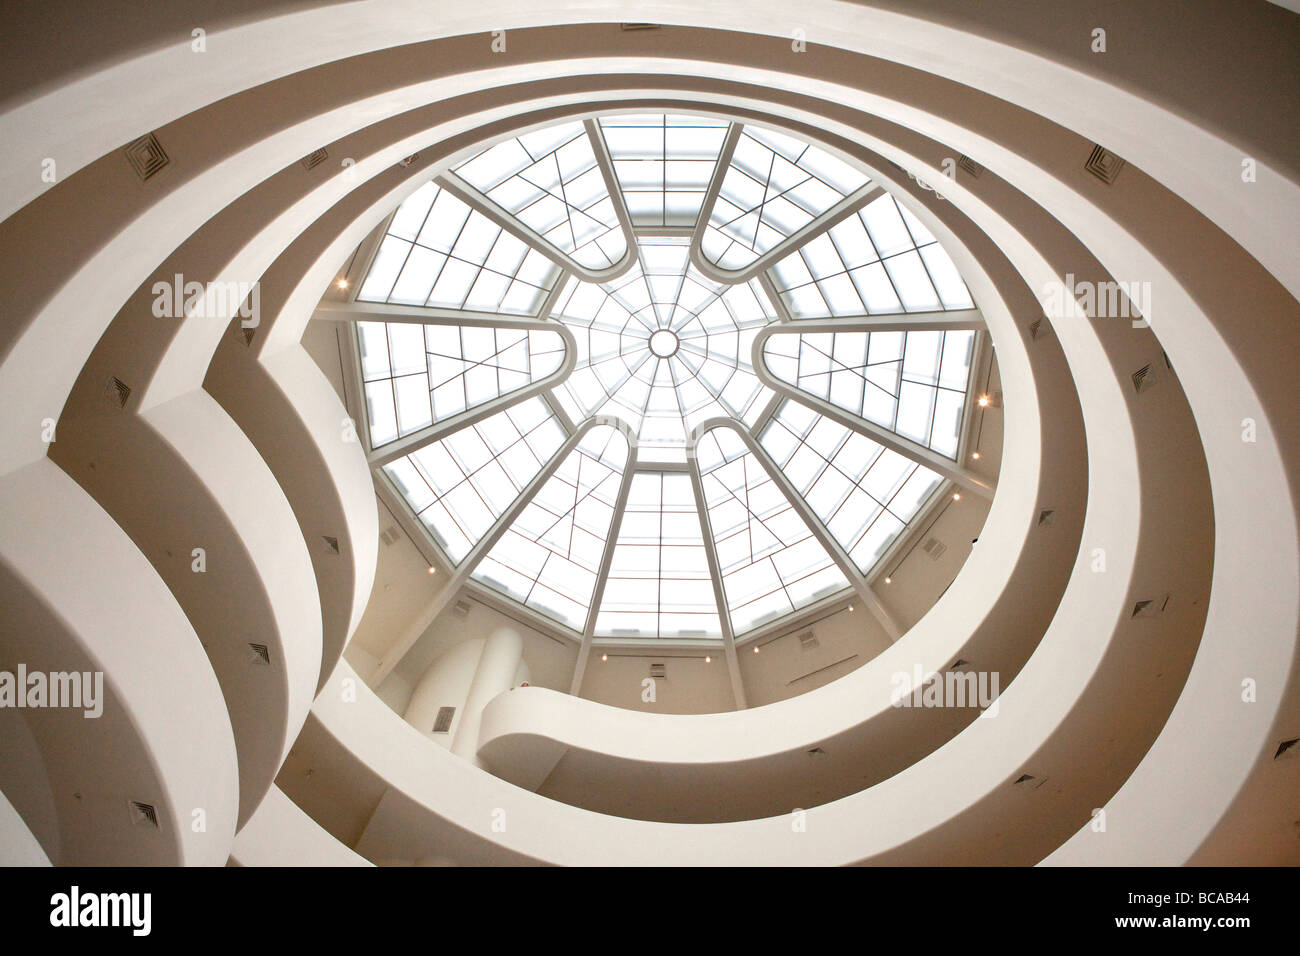 Guggenheim in NYC Stock Photo